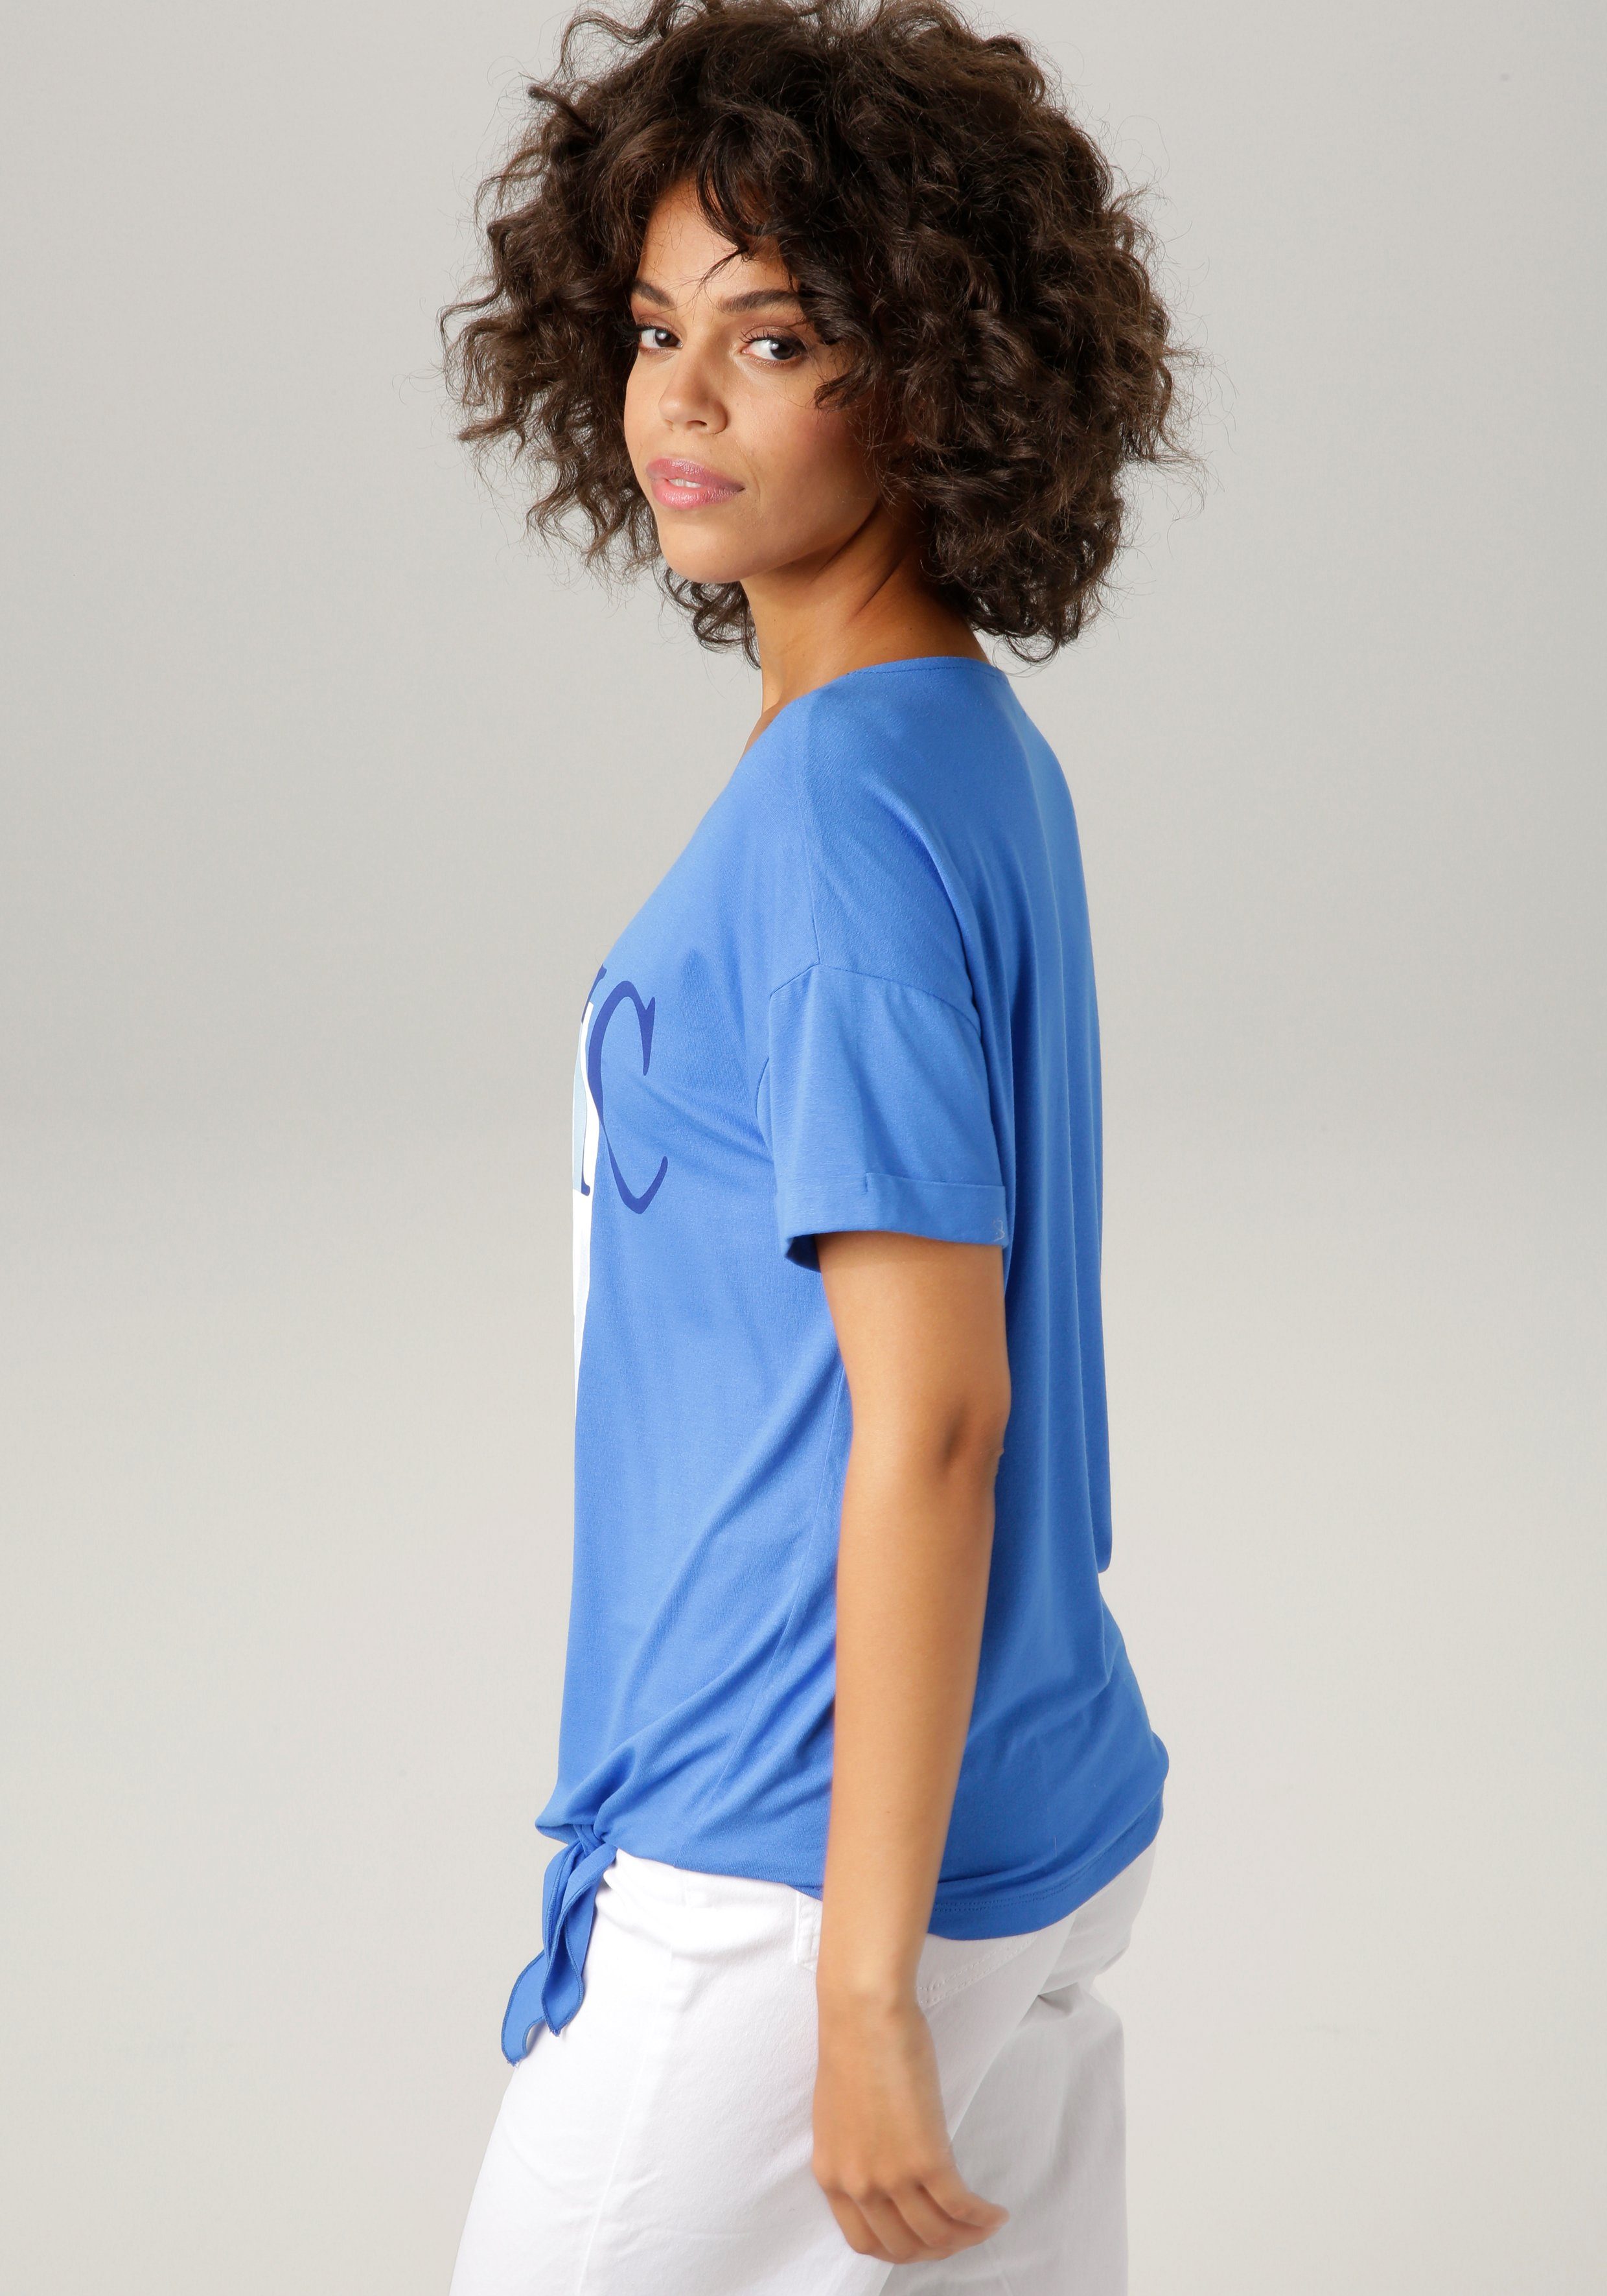 T-Shirt "ethnischem" mit royalblau-marine-wollweiß-hellpetrol-sand-schwarz Frontdruck CASUAL Aniston ausdrucksstarkem